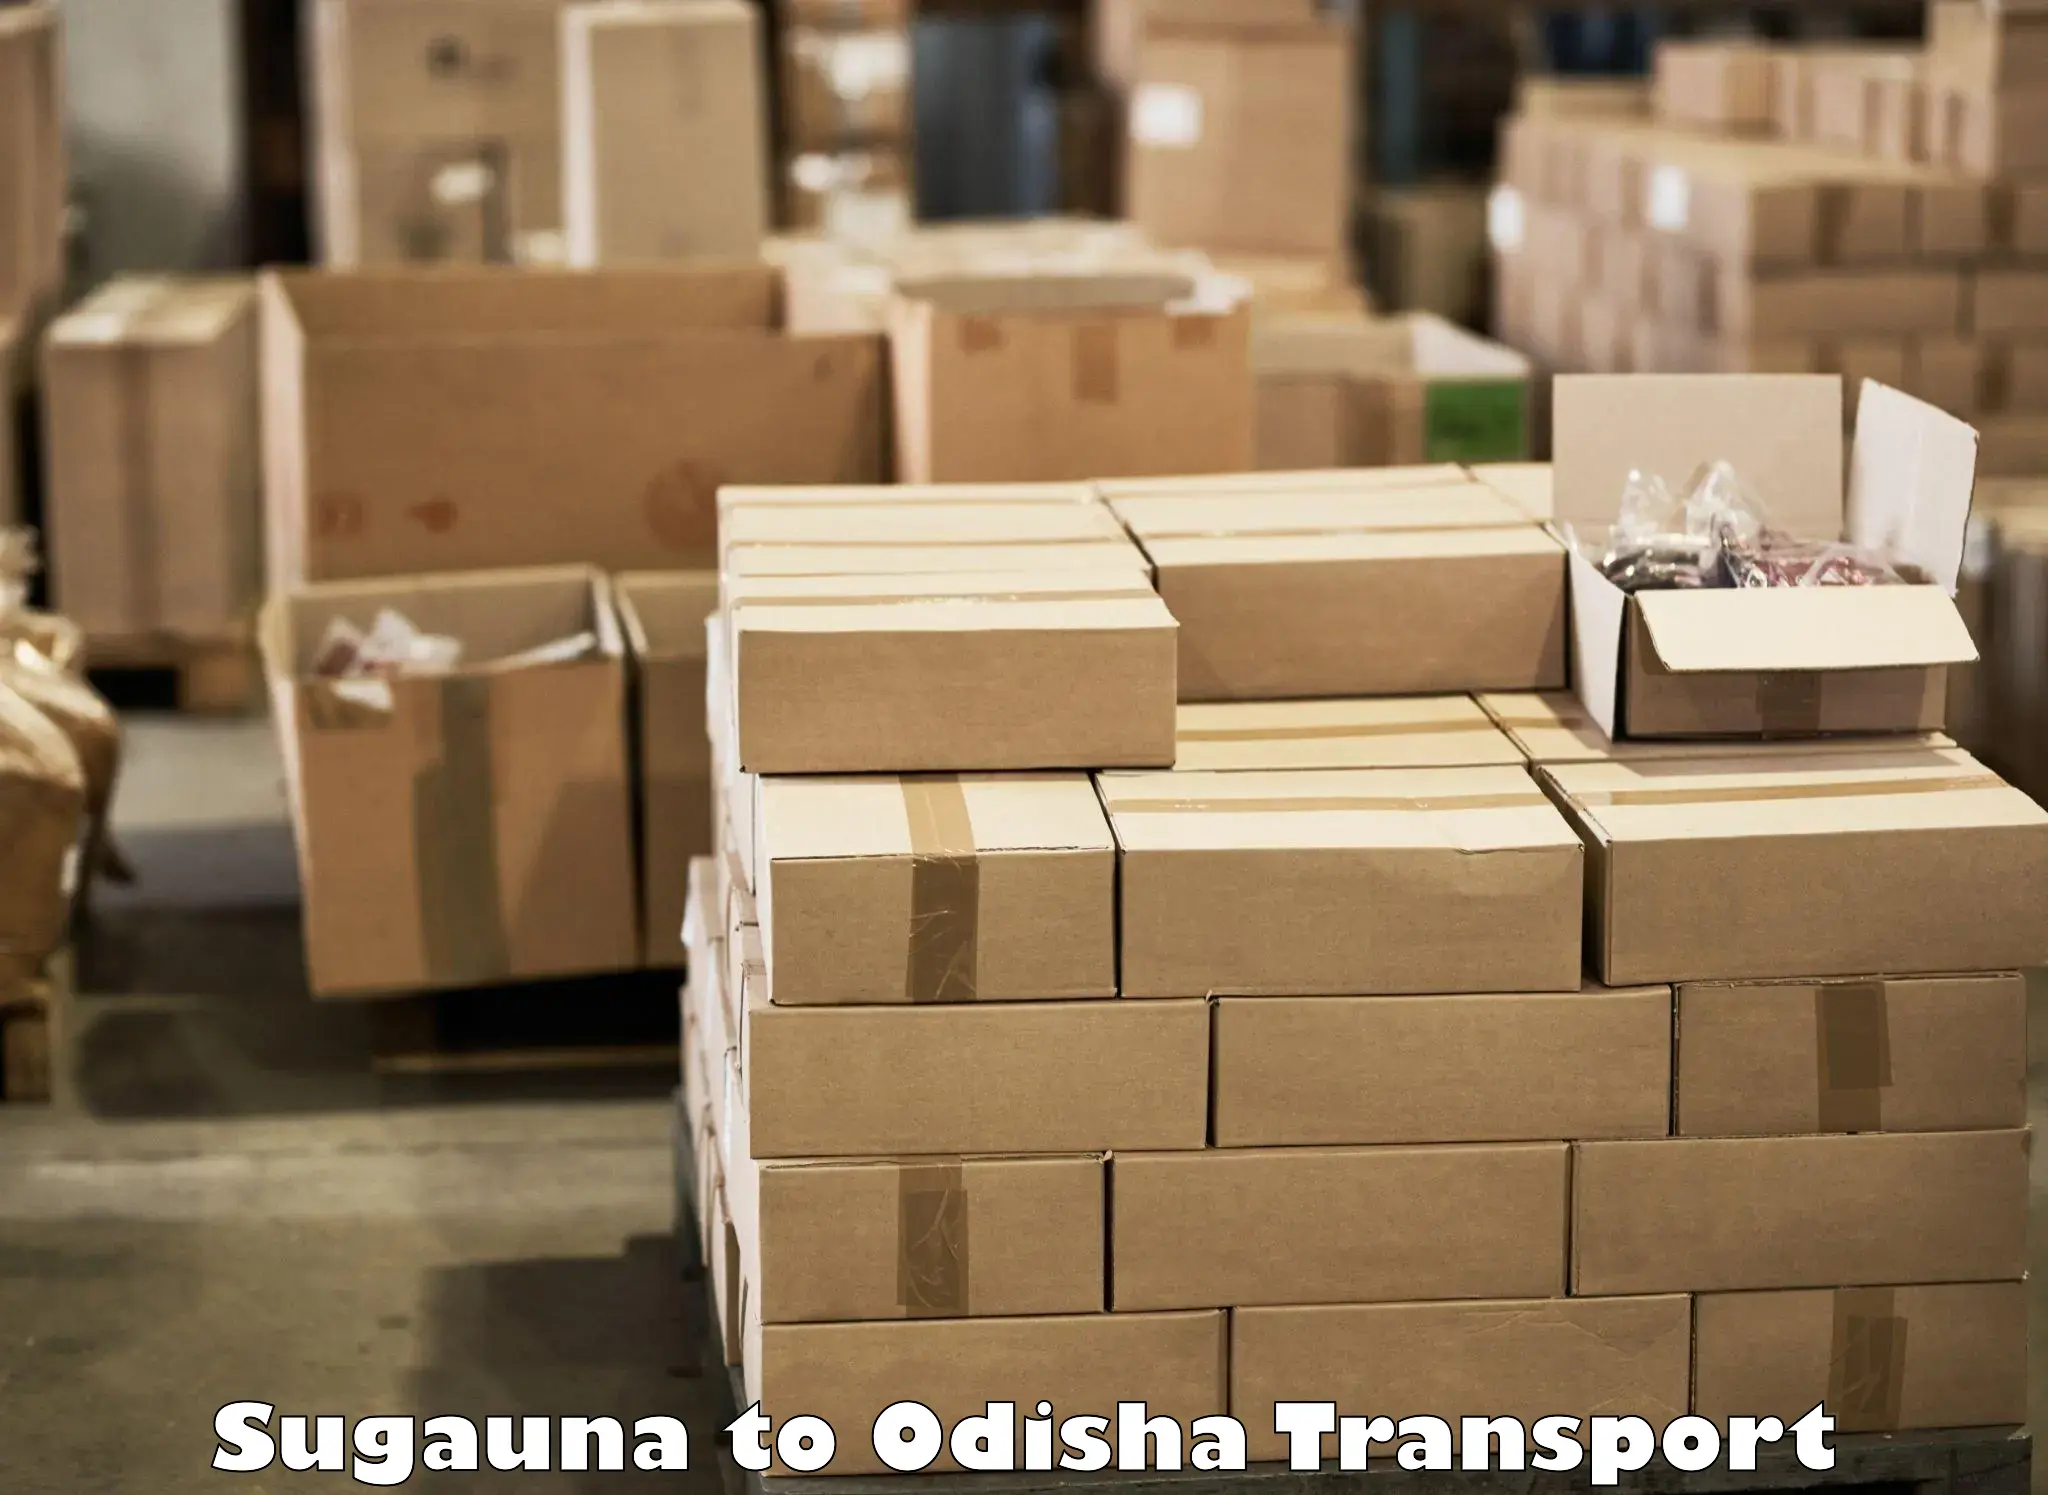 Daily transport service Sugauna to Paikana